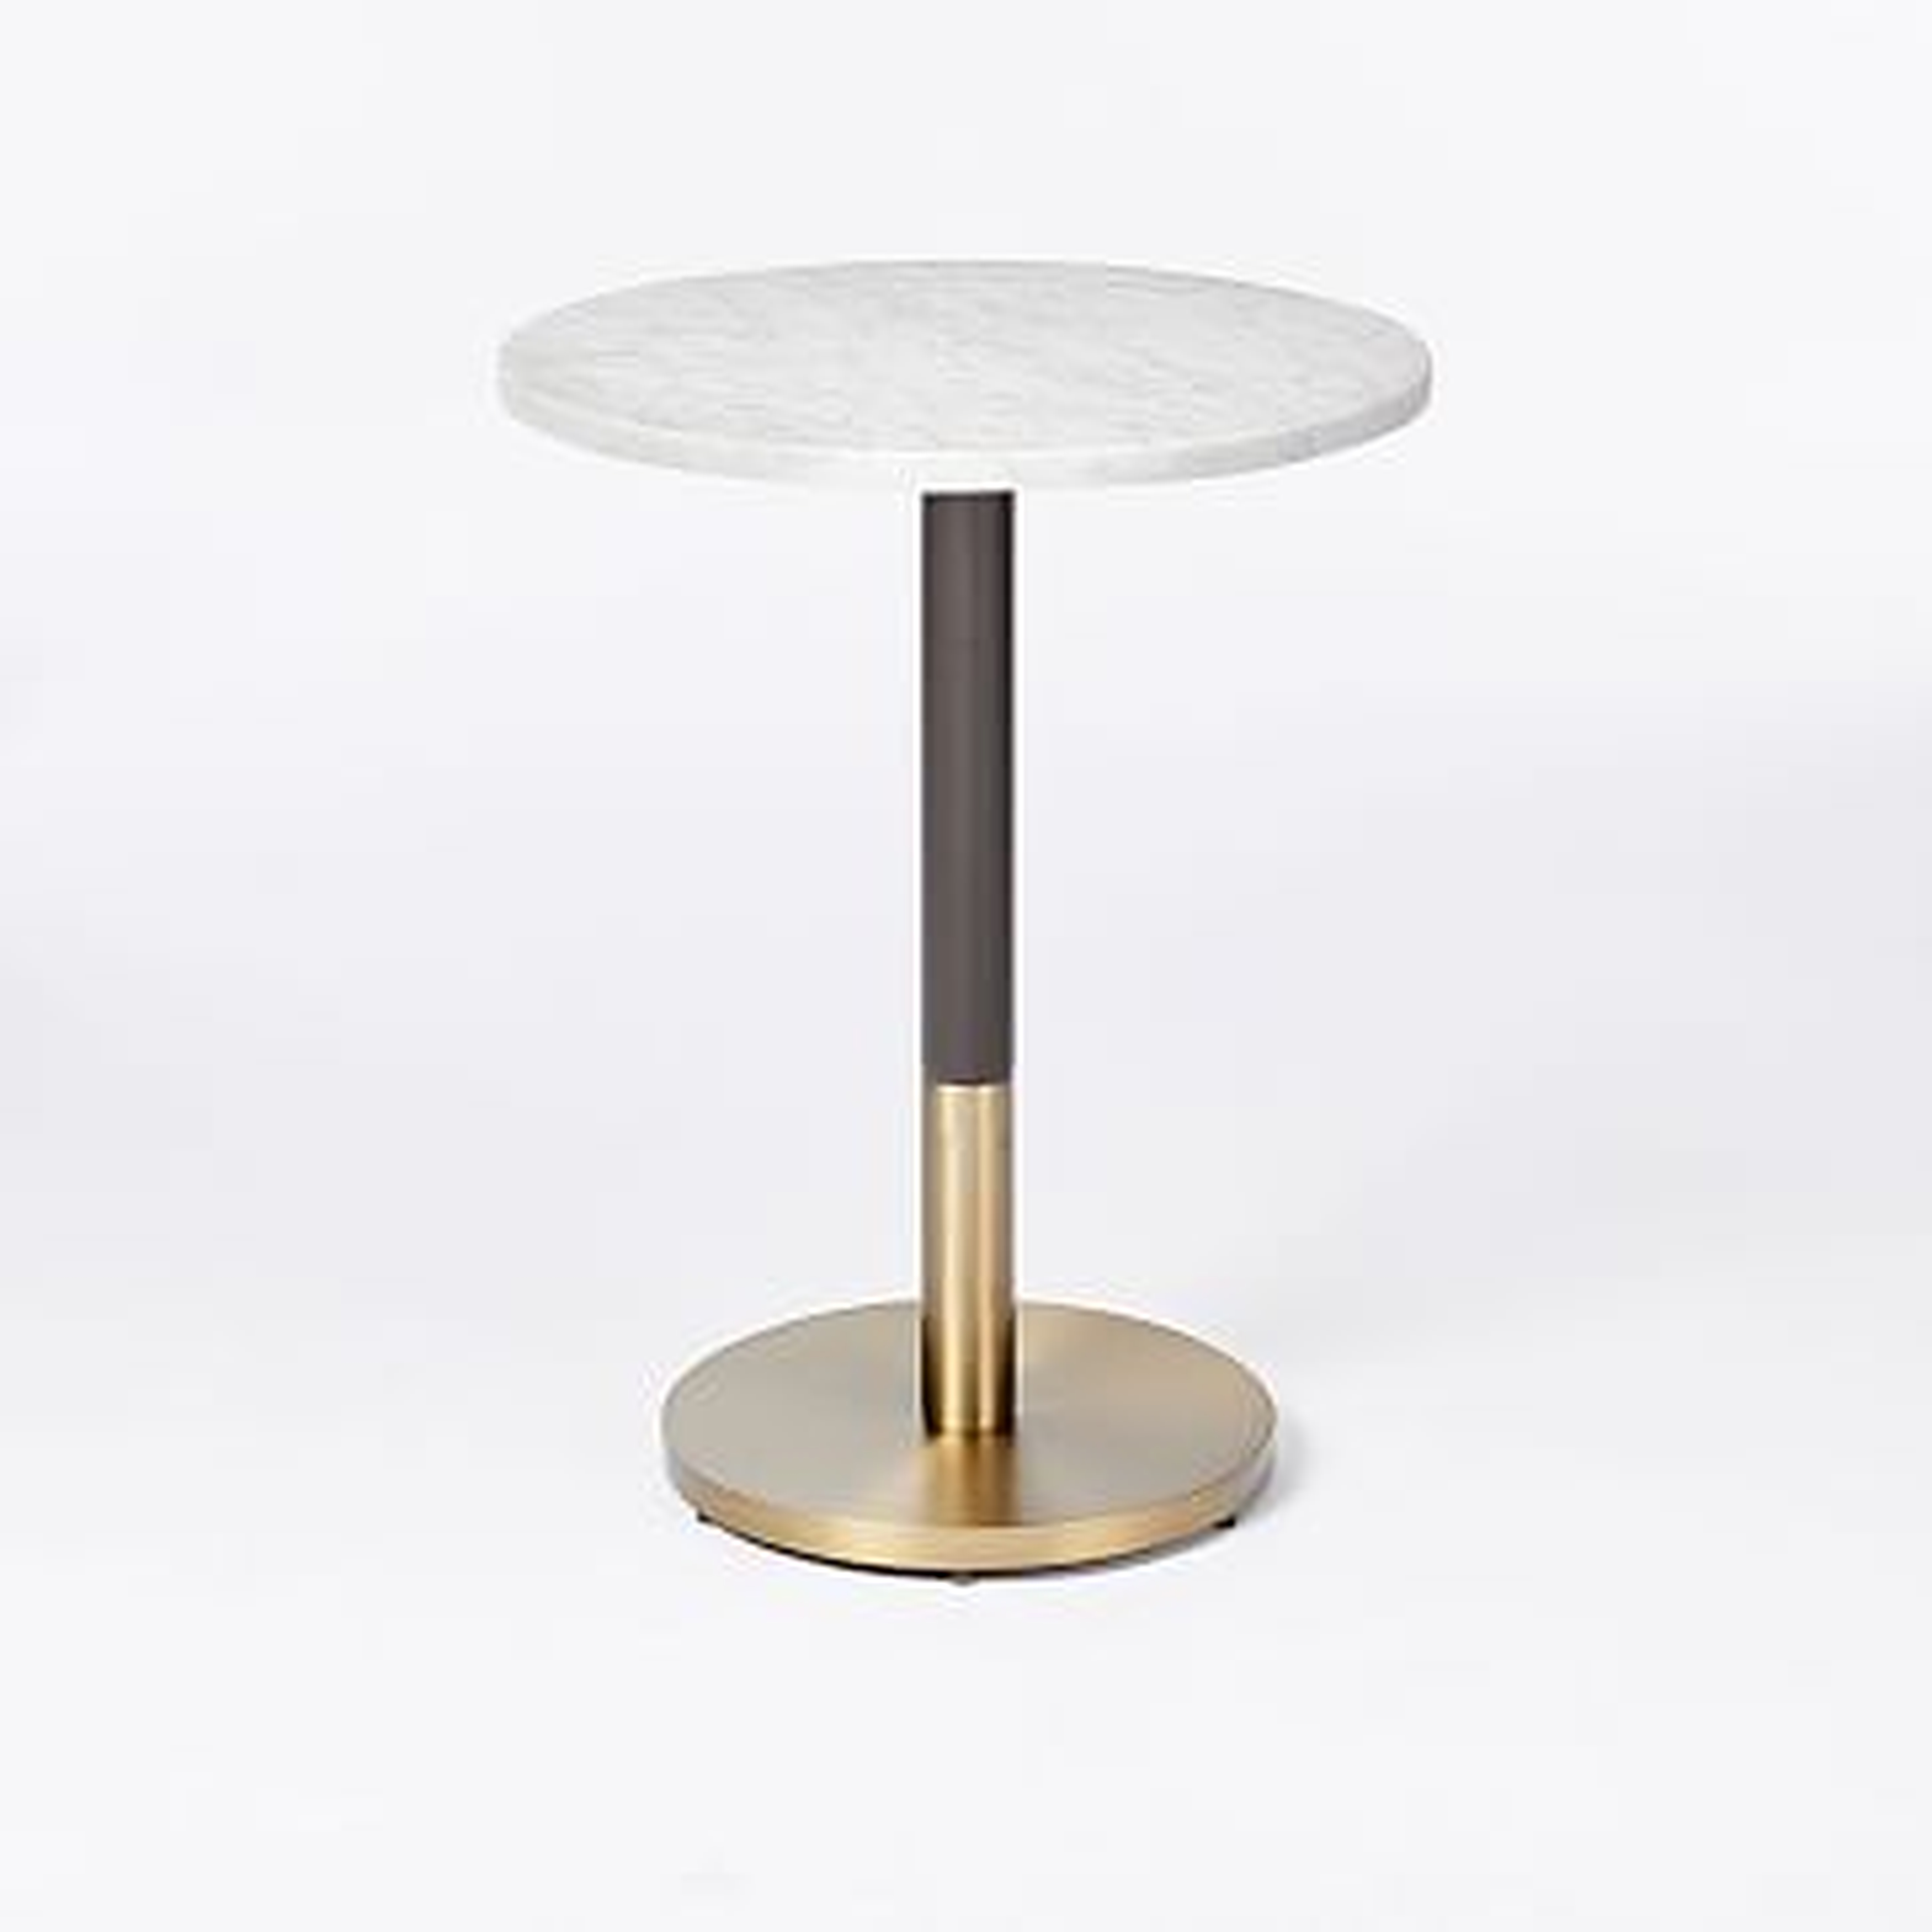 Orbit Base Round Bistro Table, White Marble, Antique Bronze/Blackened Brass - West Elm